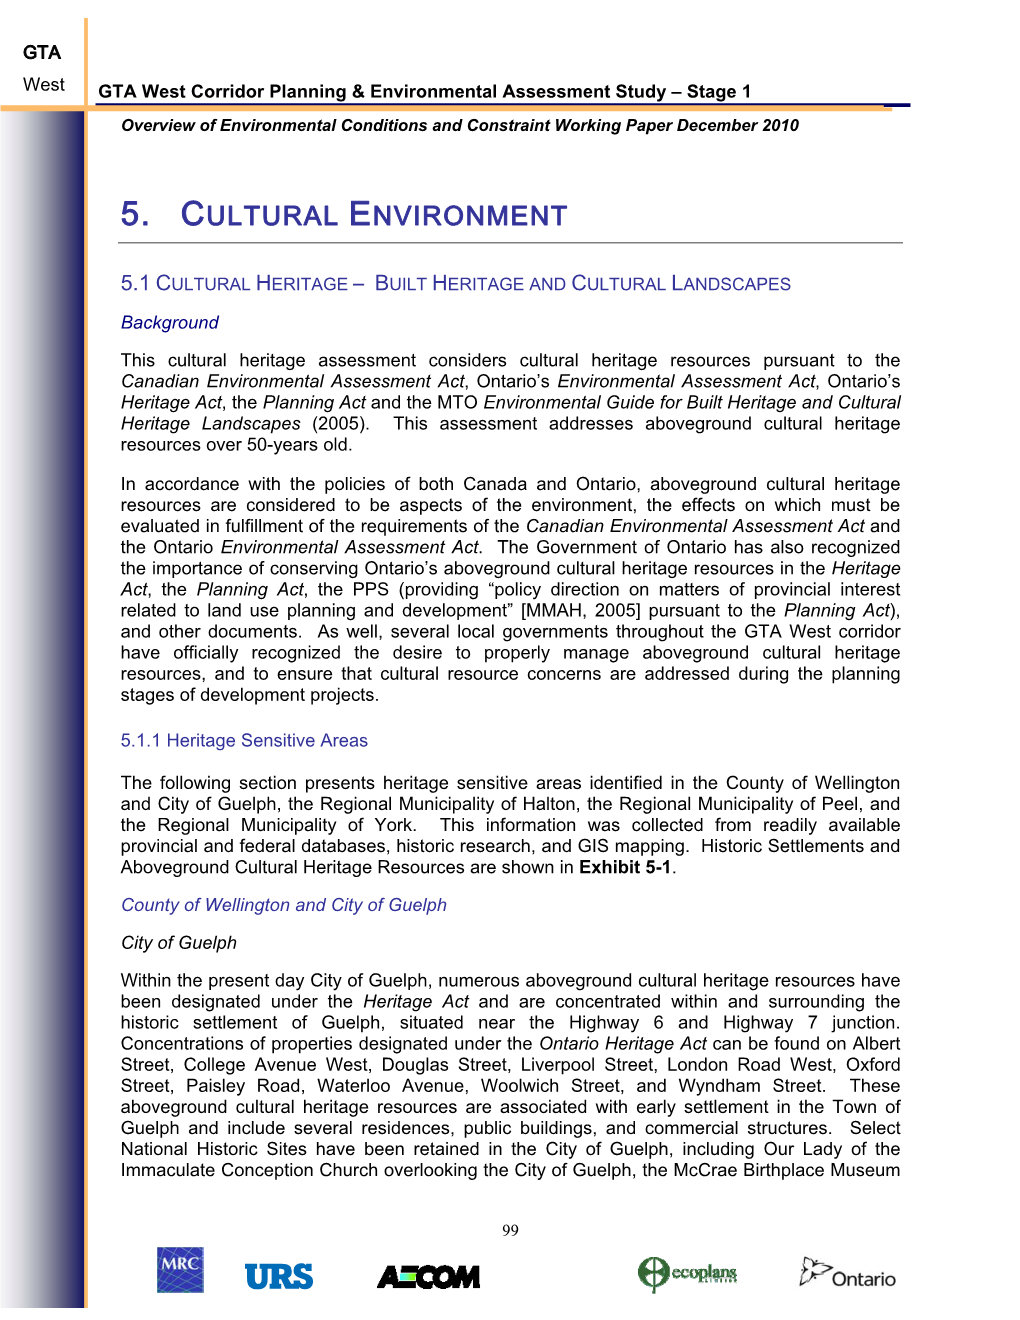 5. Cultural Environment